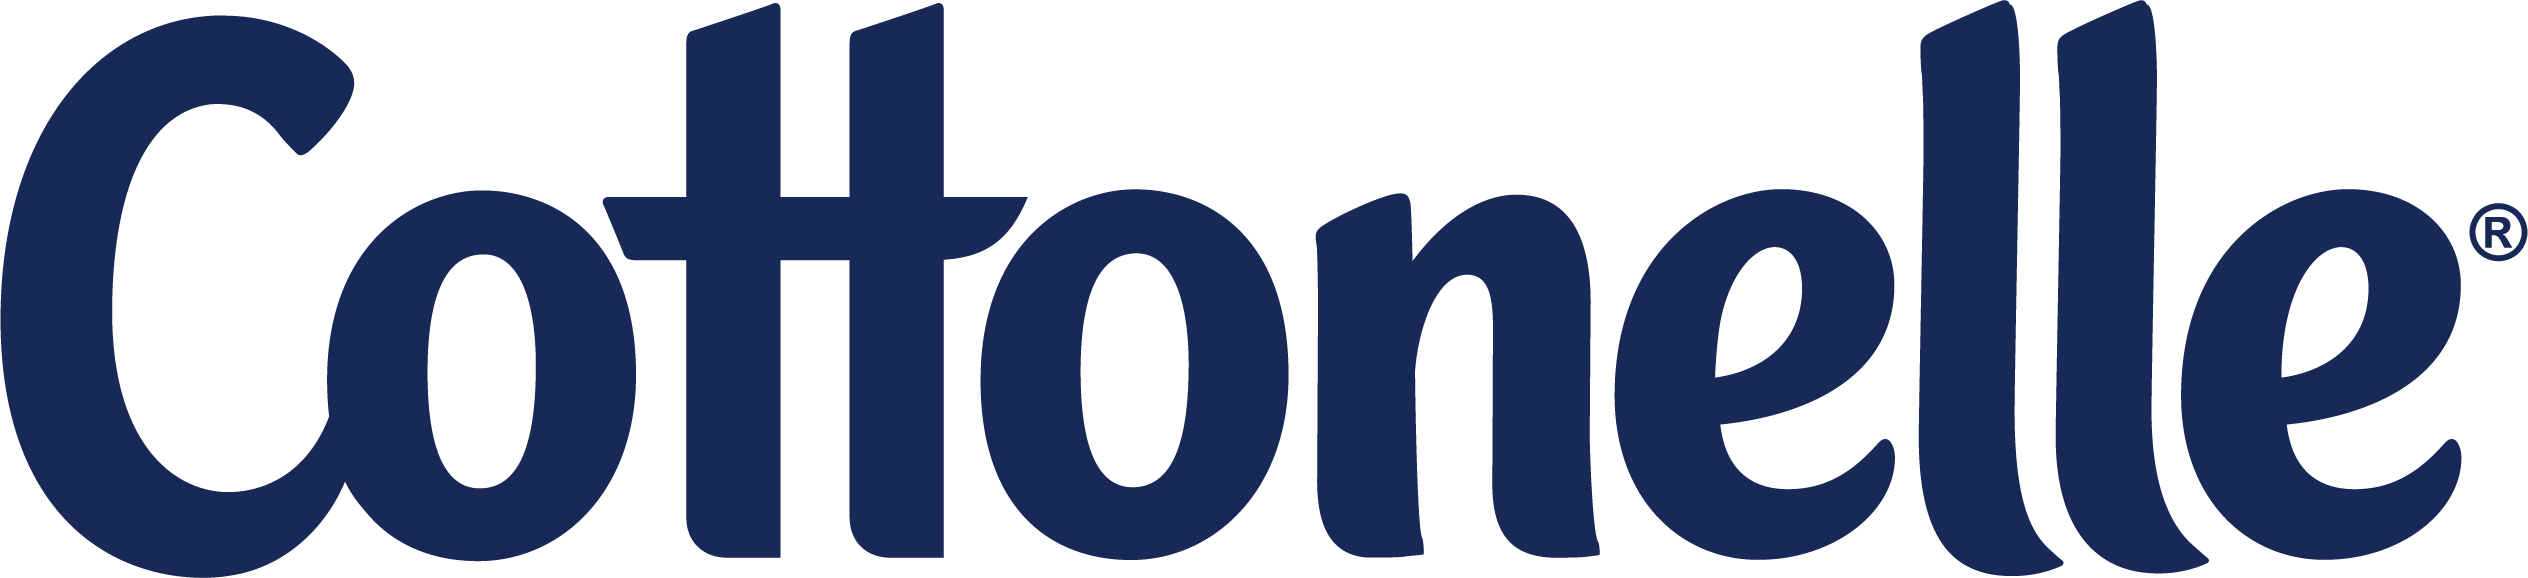 Cottonelle Logo